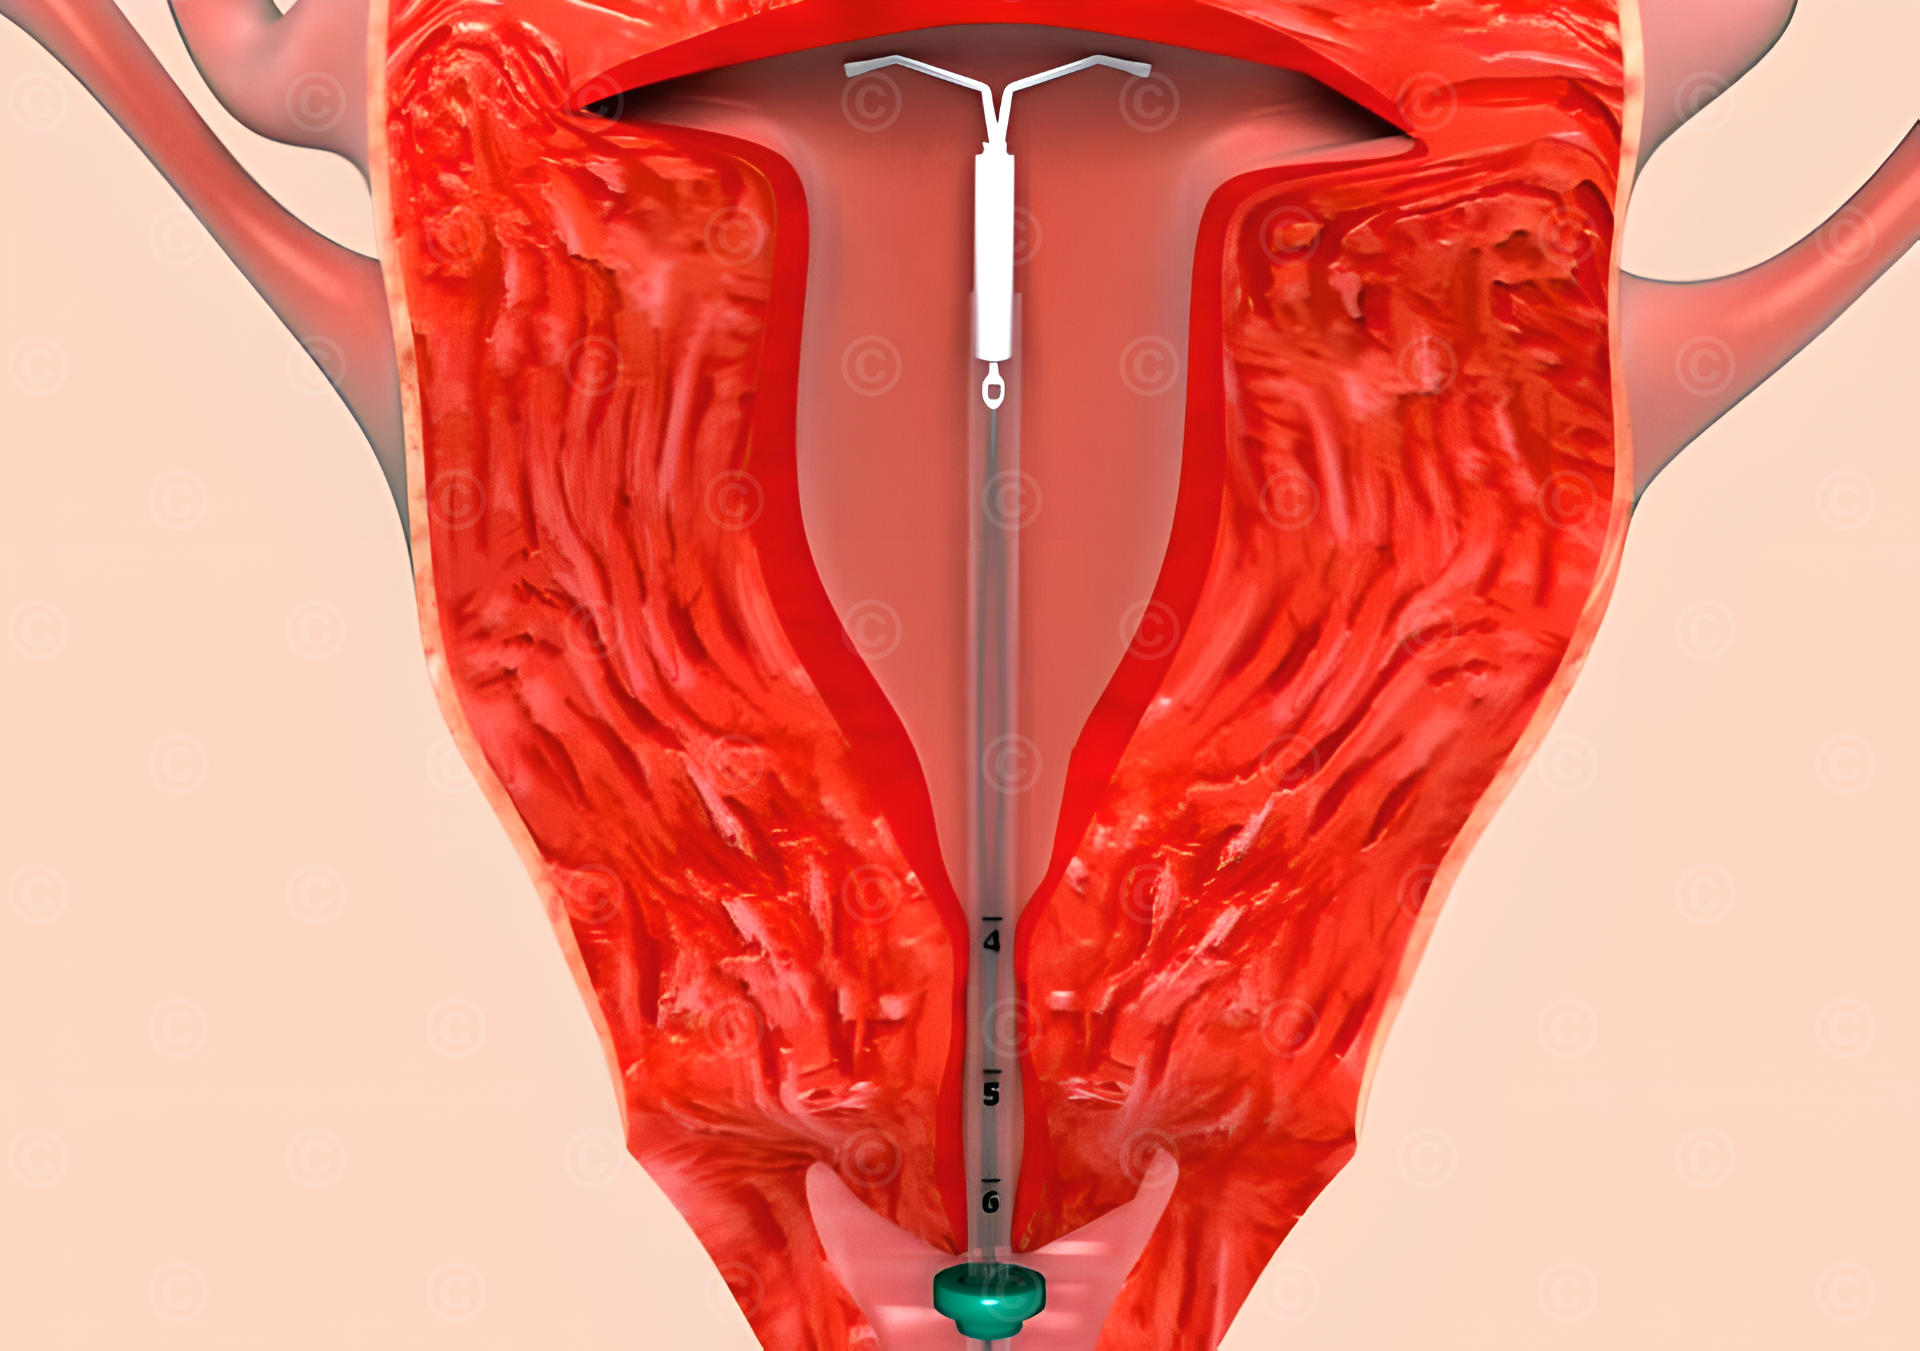 Utilization intrauterine device